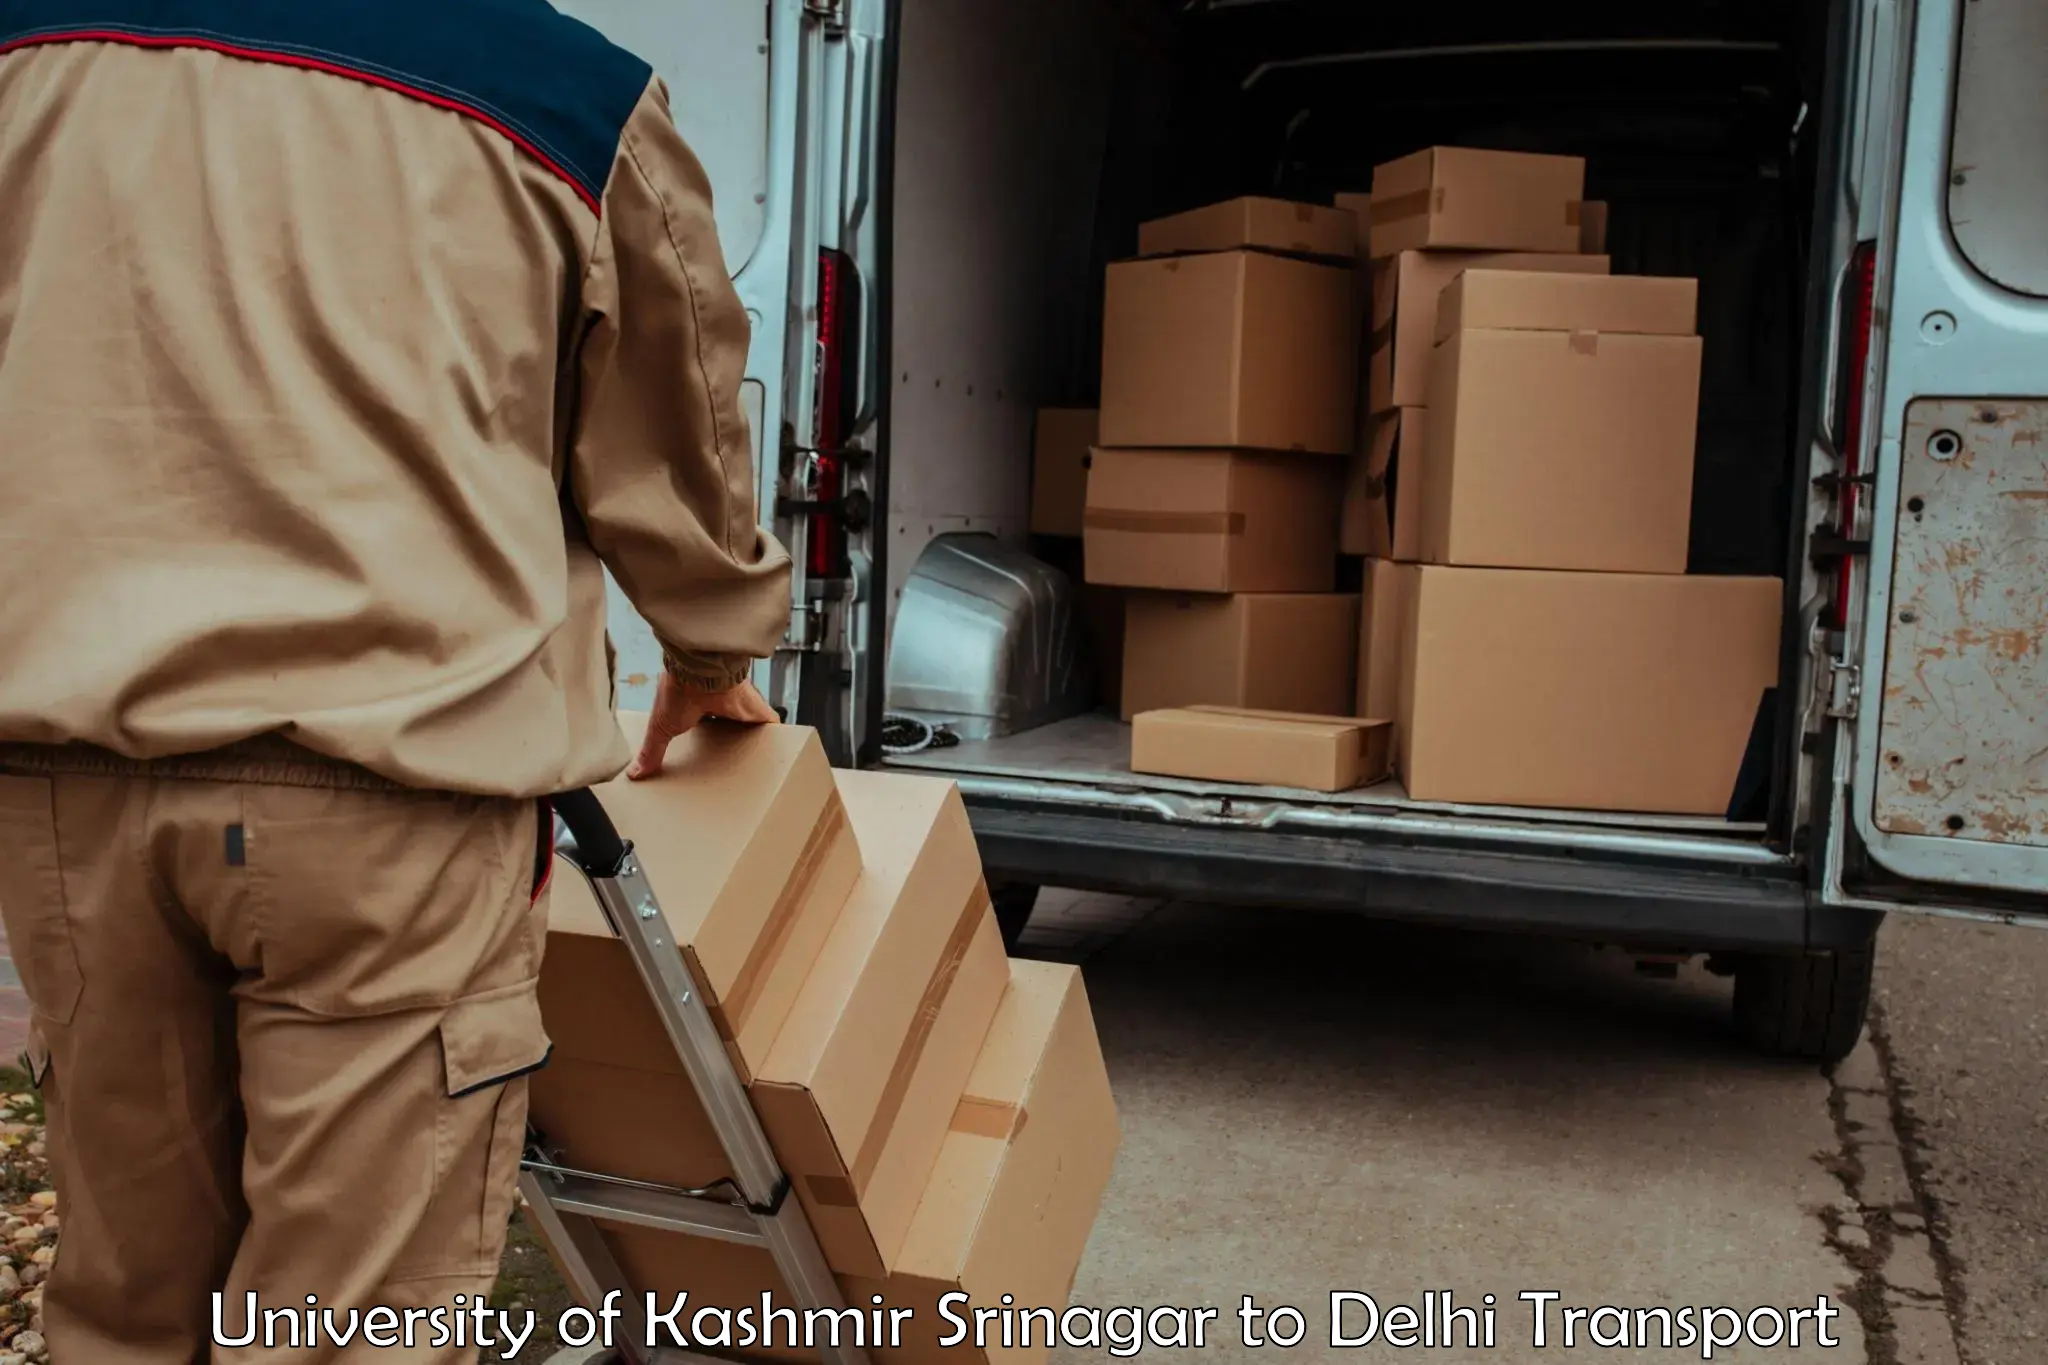 Air freight transport services University of Kashmir Srinagar to Jamia Millia Islamia New Delhi